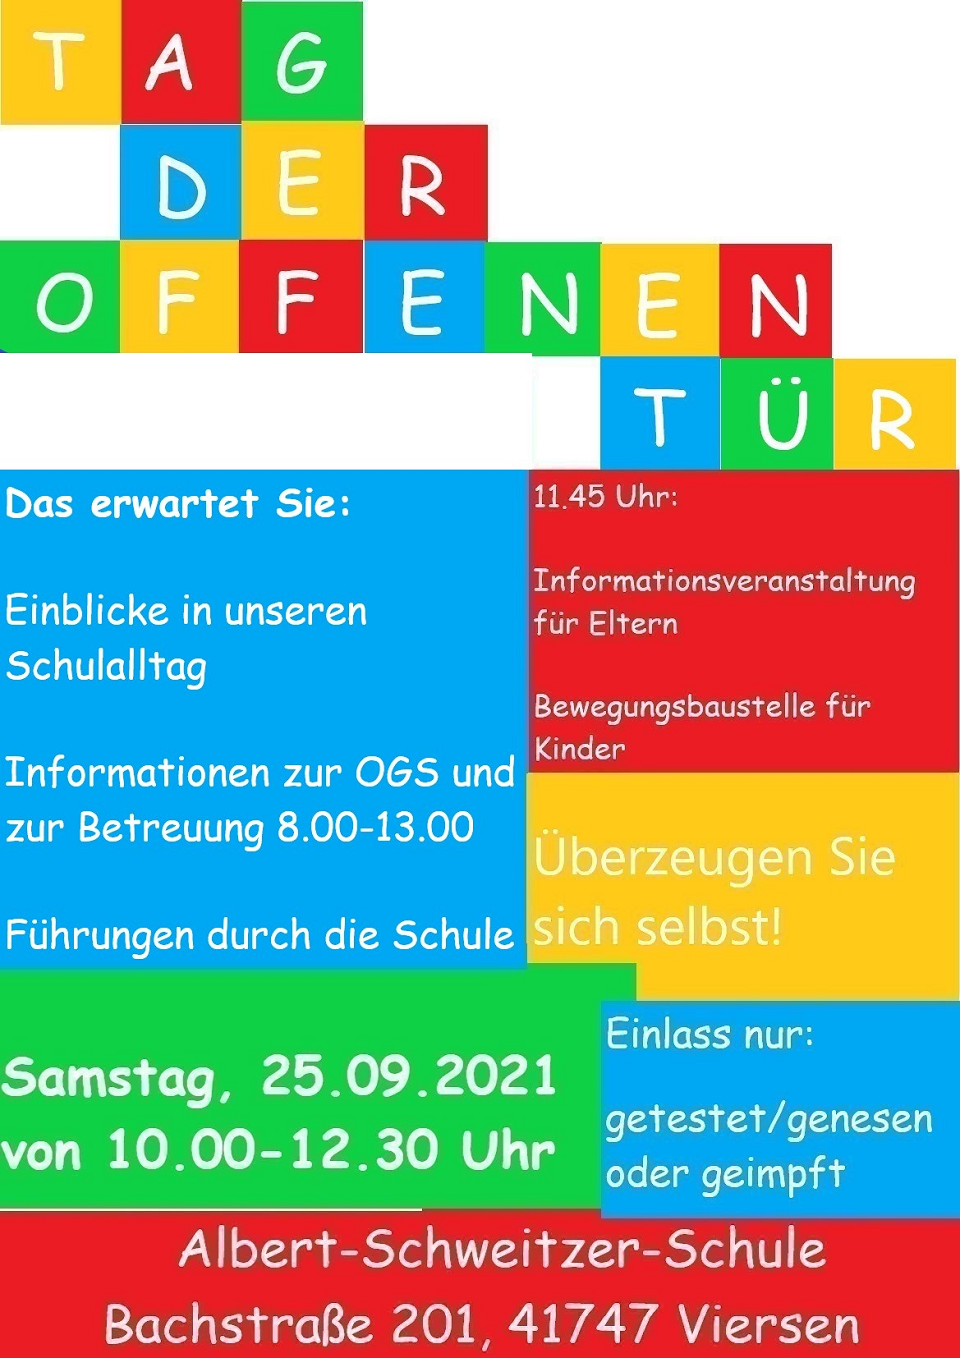 Das Werbeplakat der Albert-Schweitzer-Schule